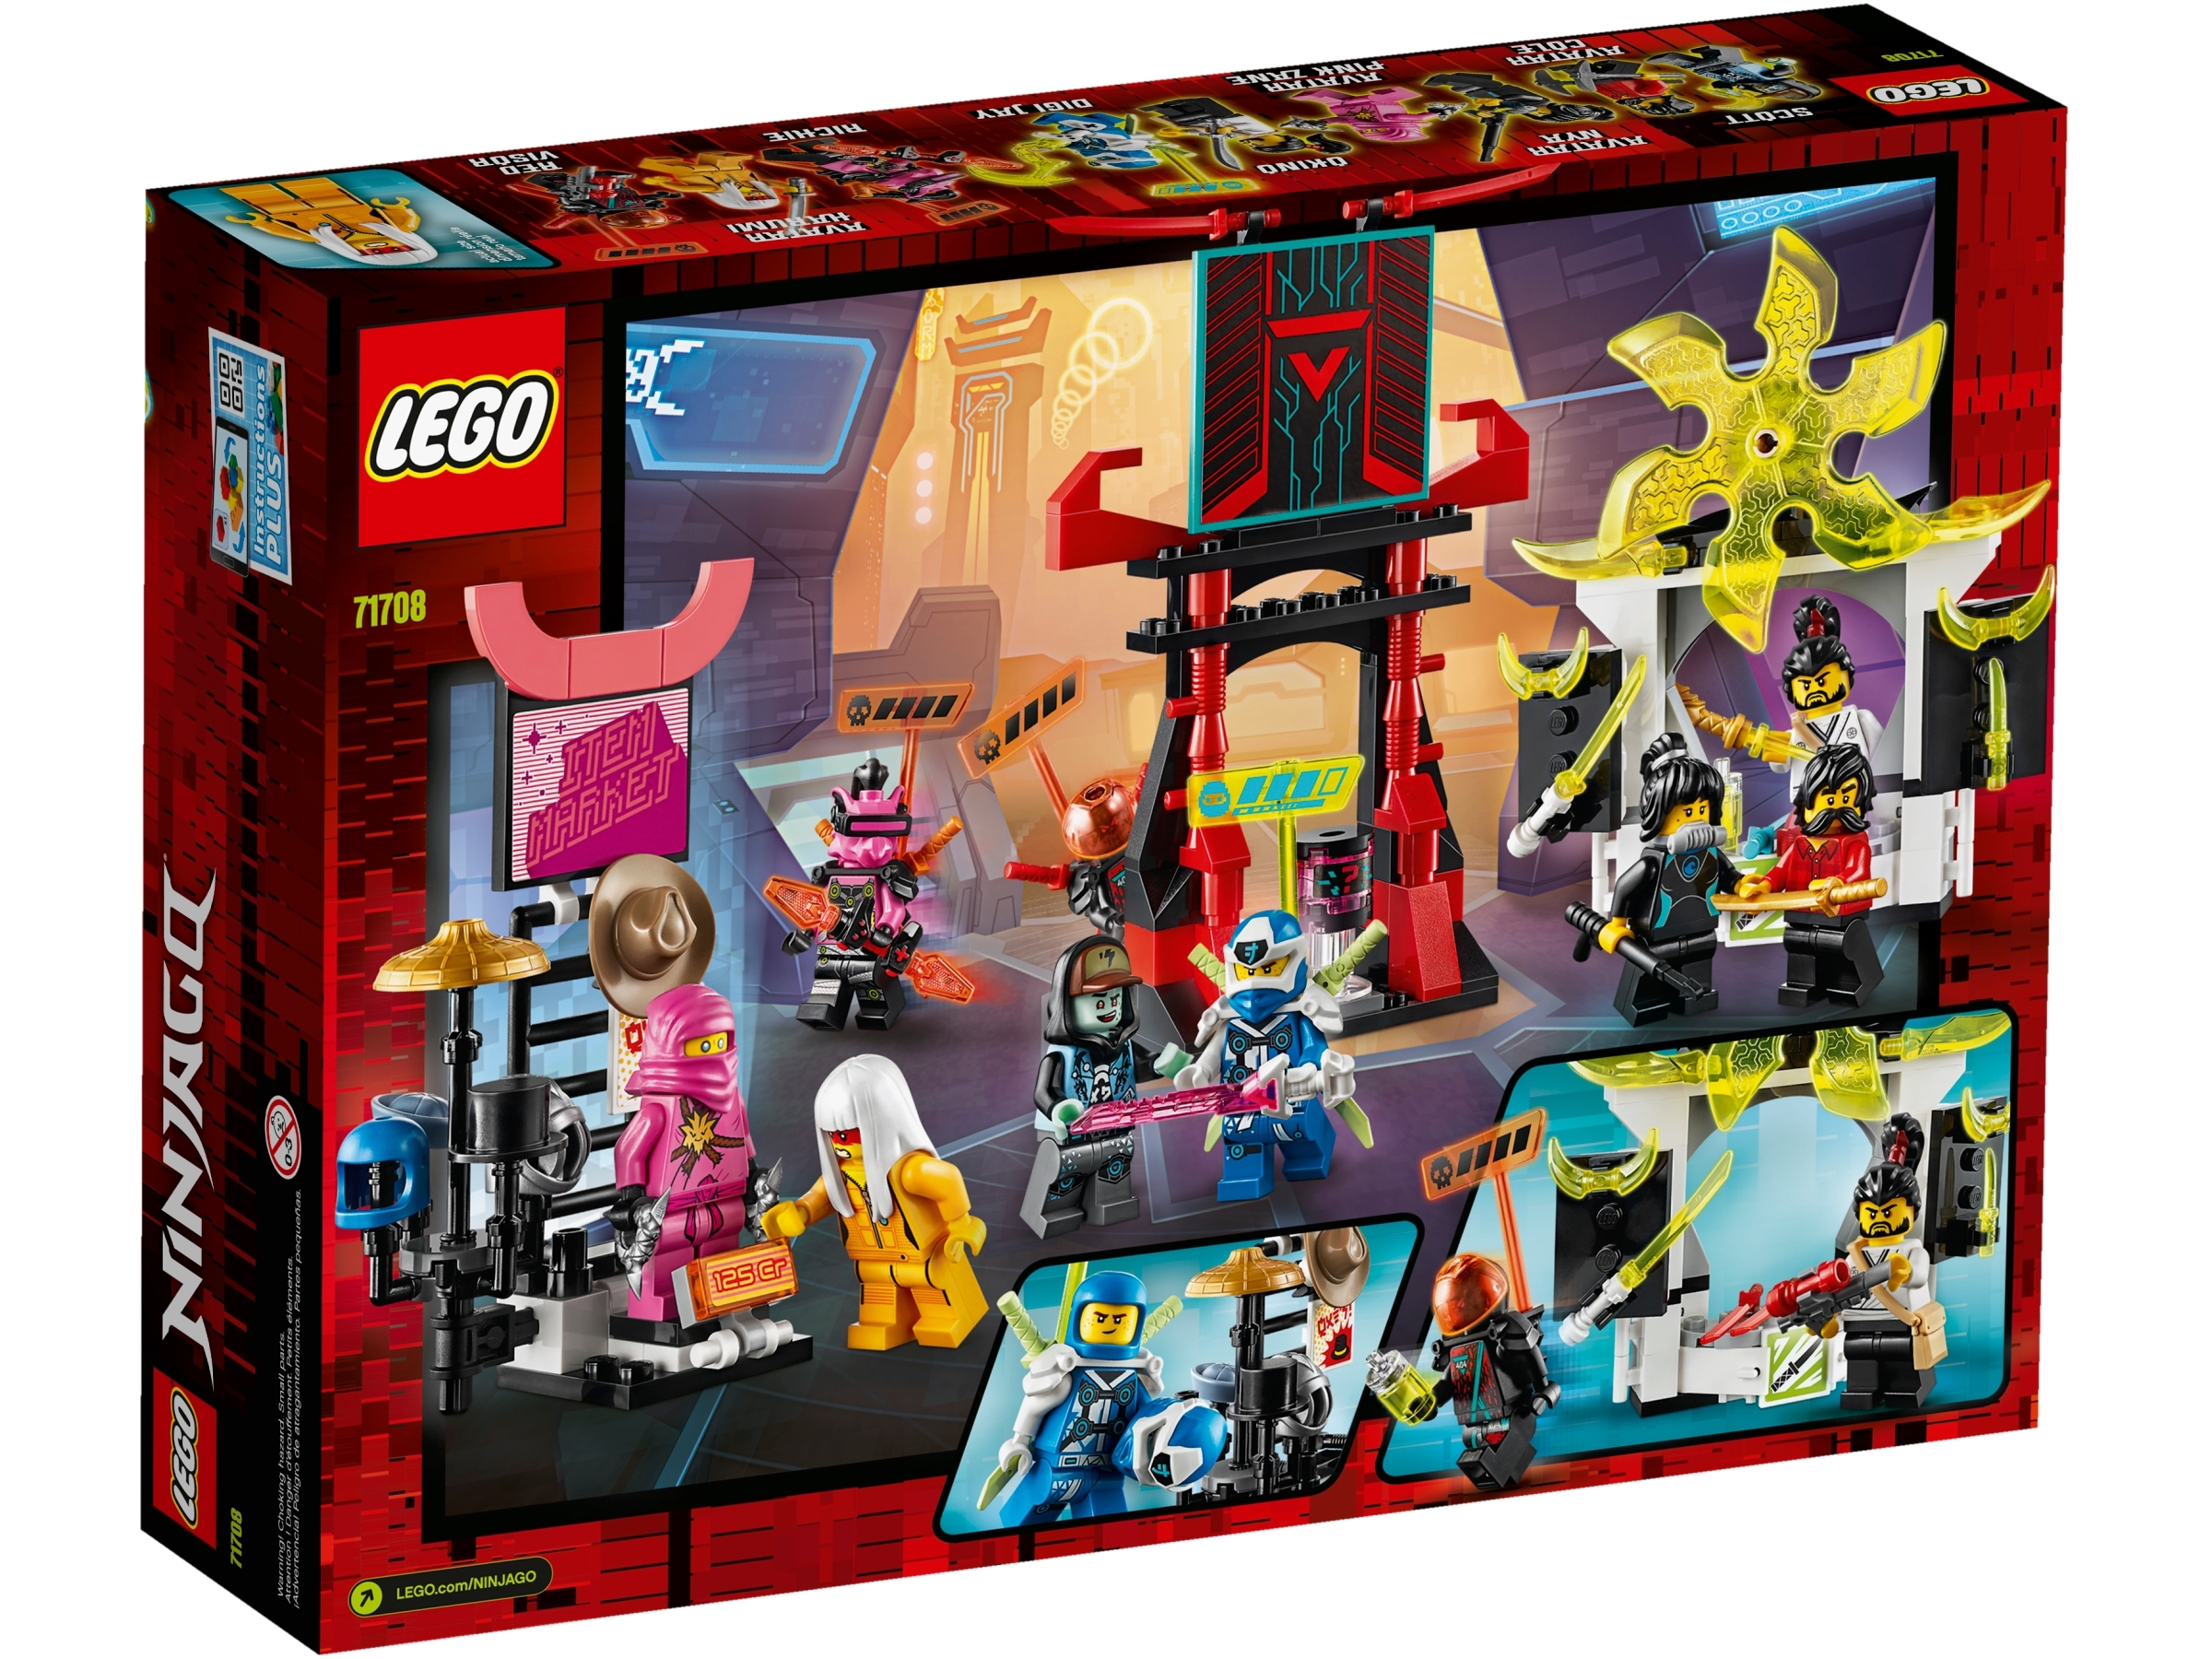 Lego 71708 Ninjago Gamer's Market Building Set 